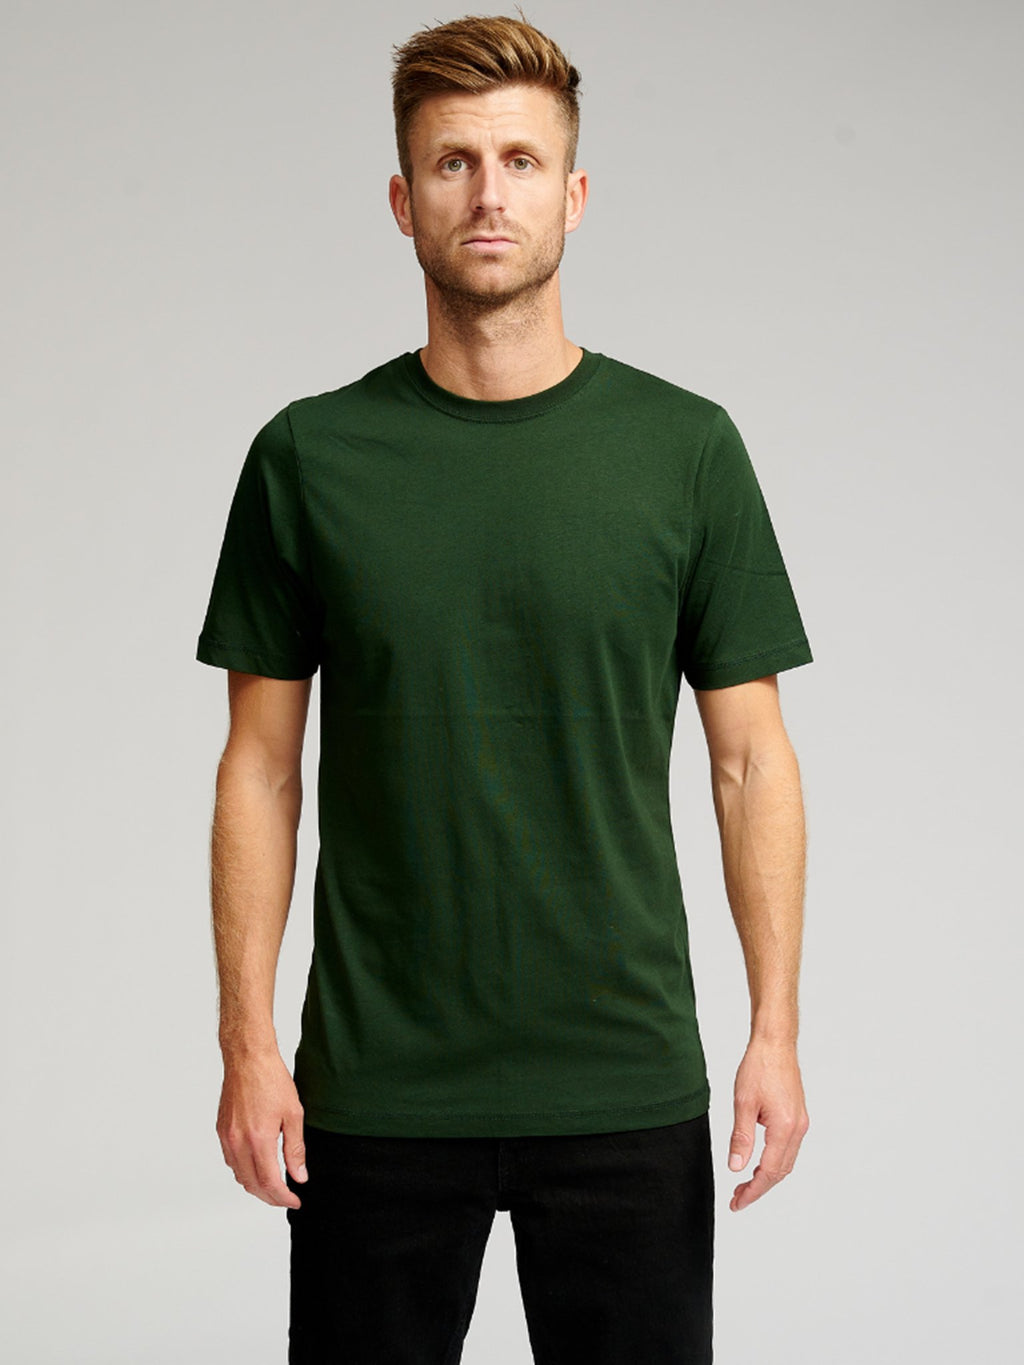 Ecológico Basic Camisetas - Paquete de 9 unidades (V.I.P.)